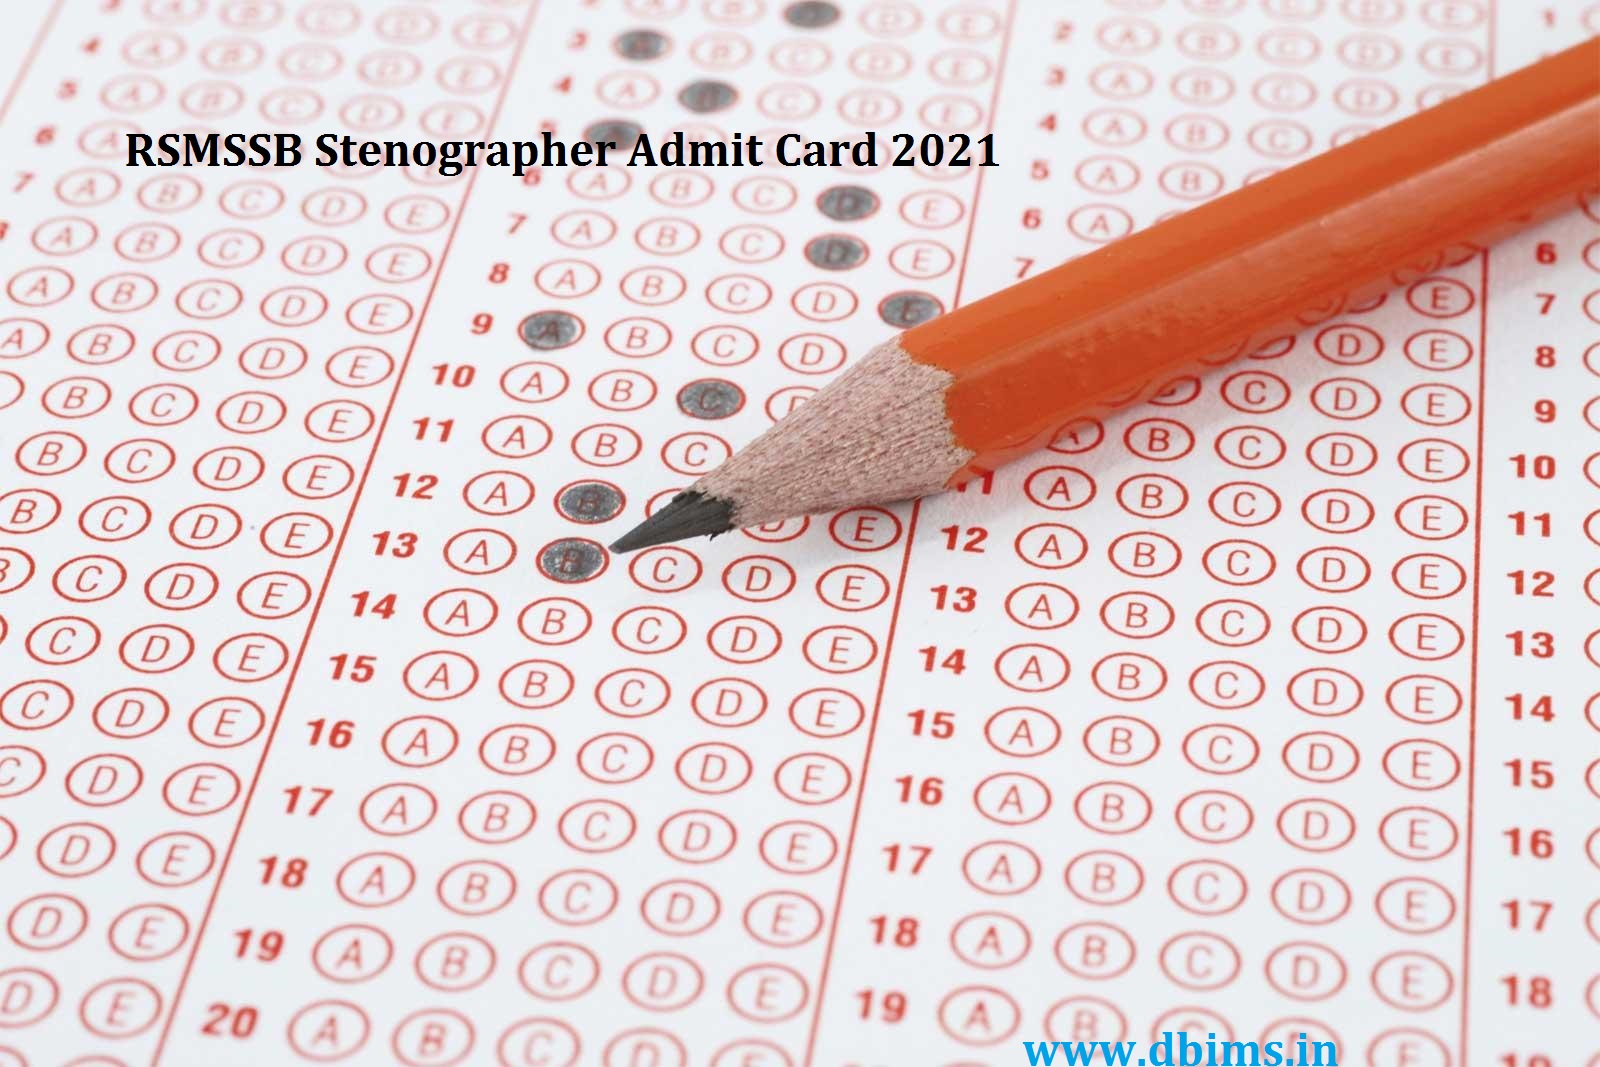 RSMSSB Stenographer Admit Card 2021 